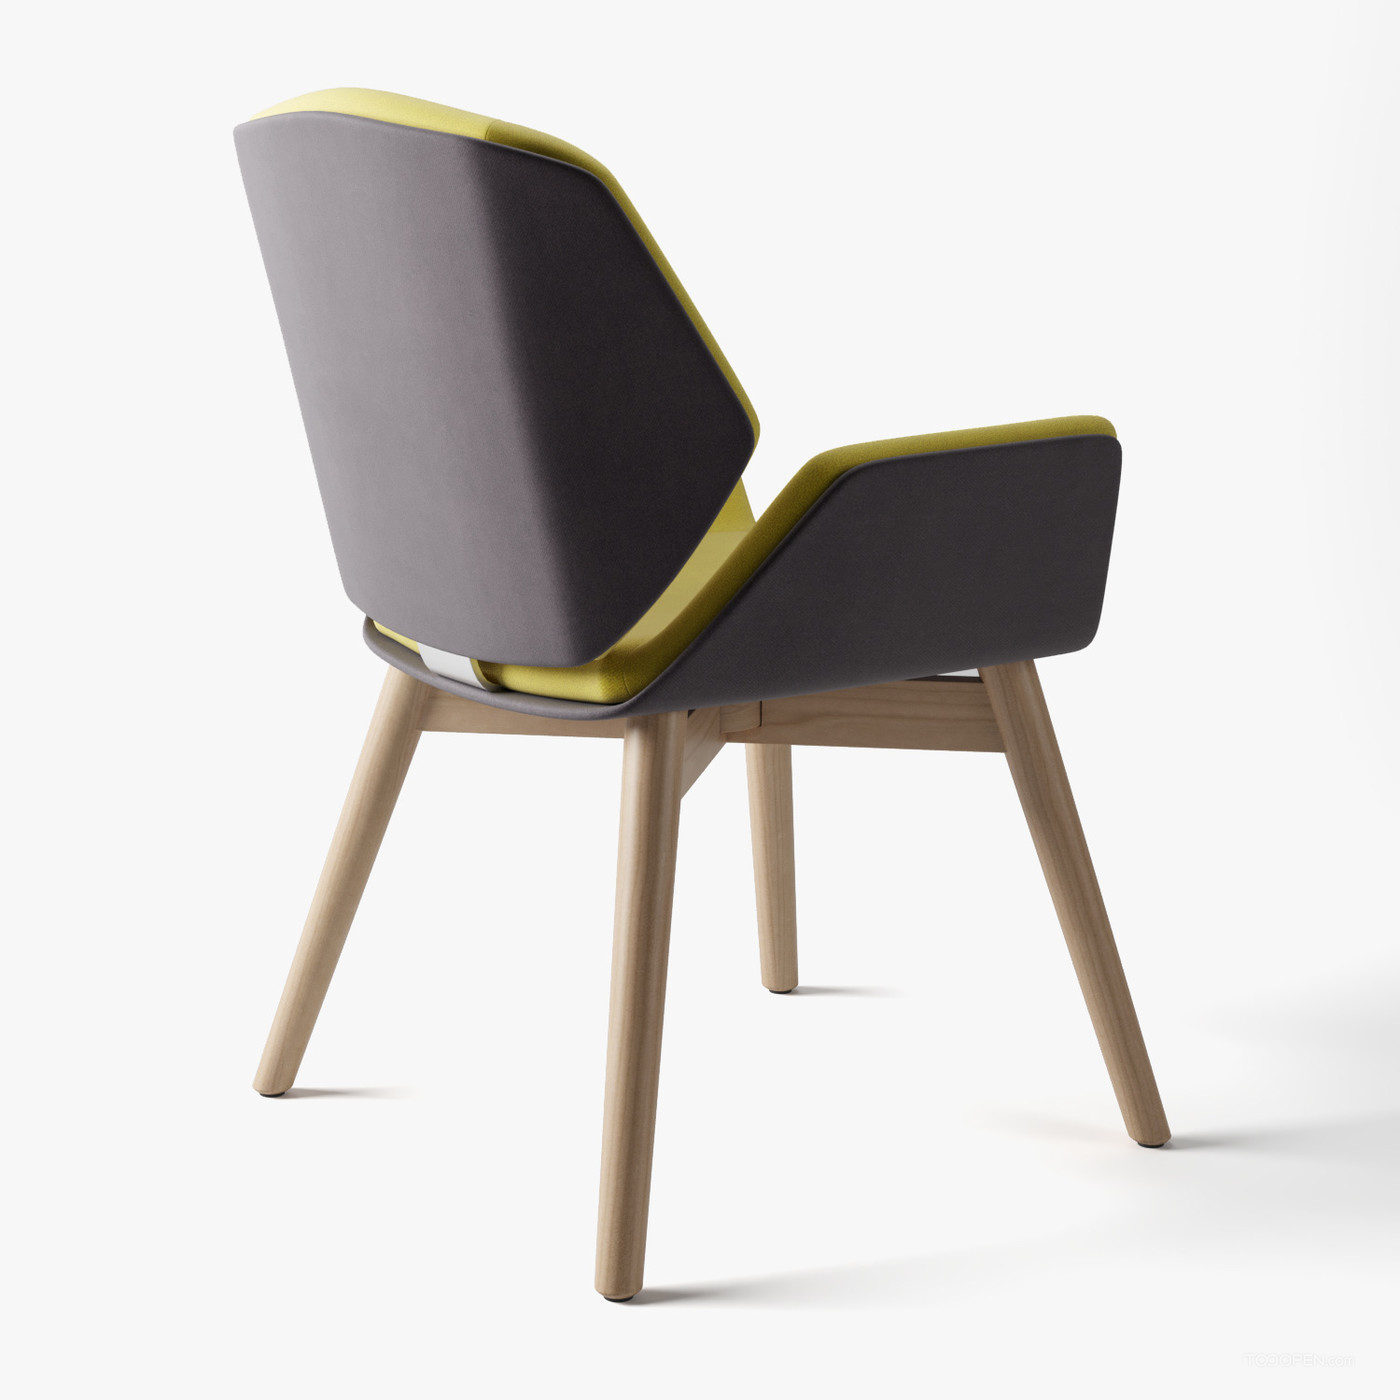 时尚简约风格的椅子家具设计欣赏-07